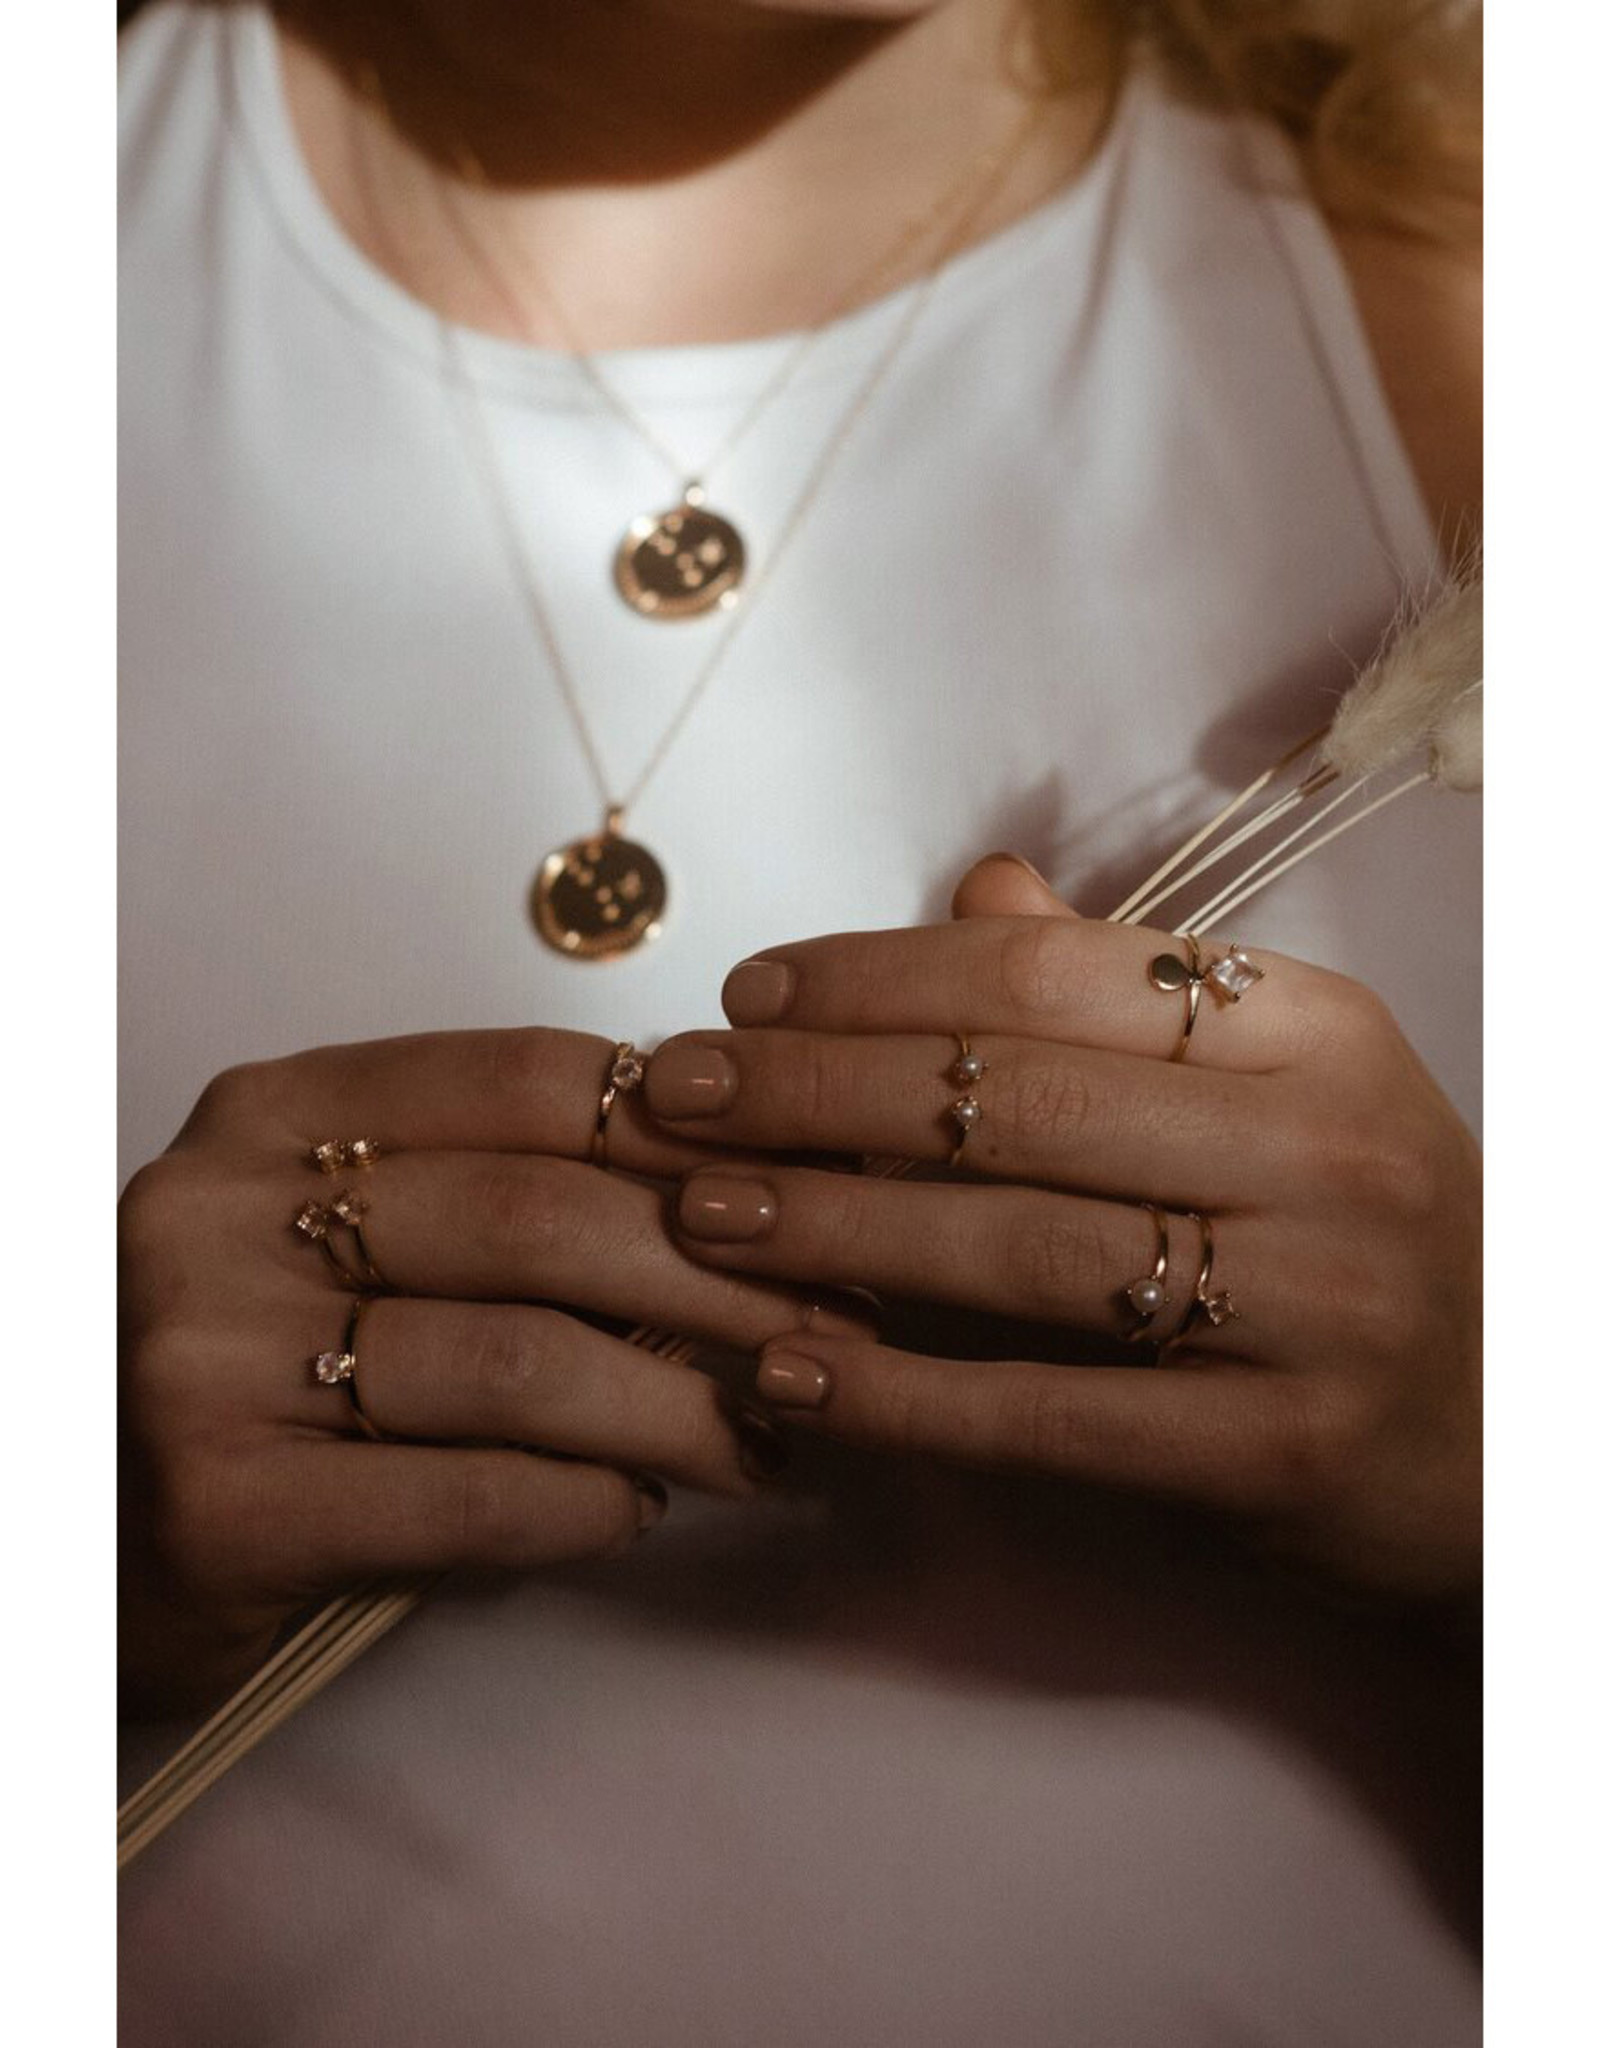 Sarah Mulder Jewelry Gold Cassie Ring - Rose Quartz + Pearl - 8